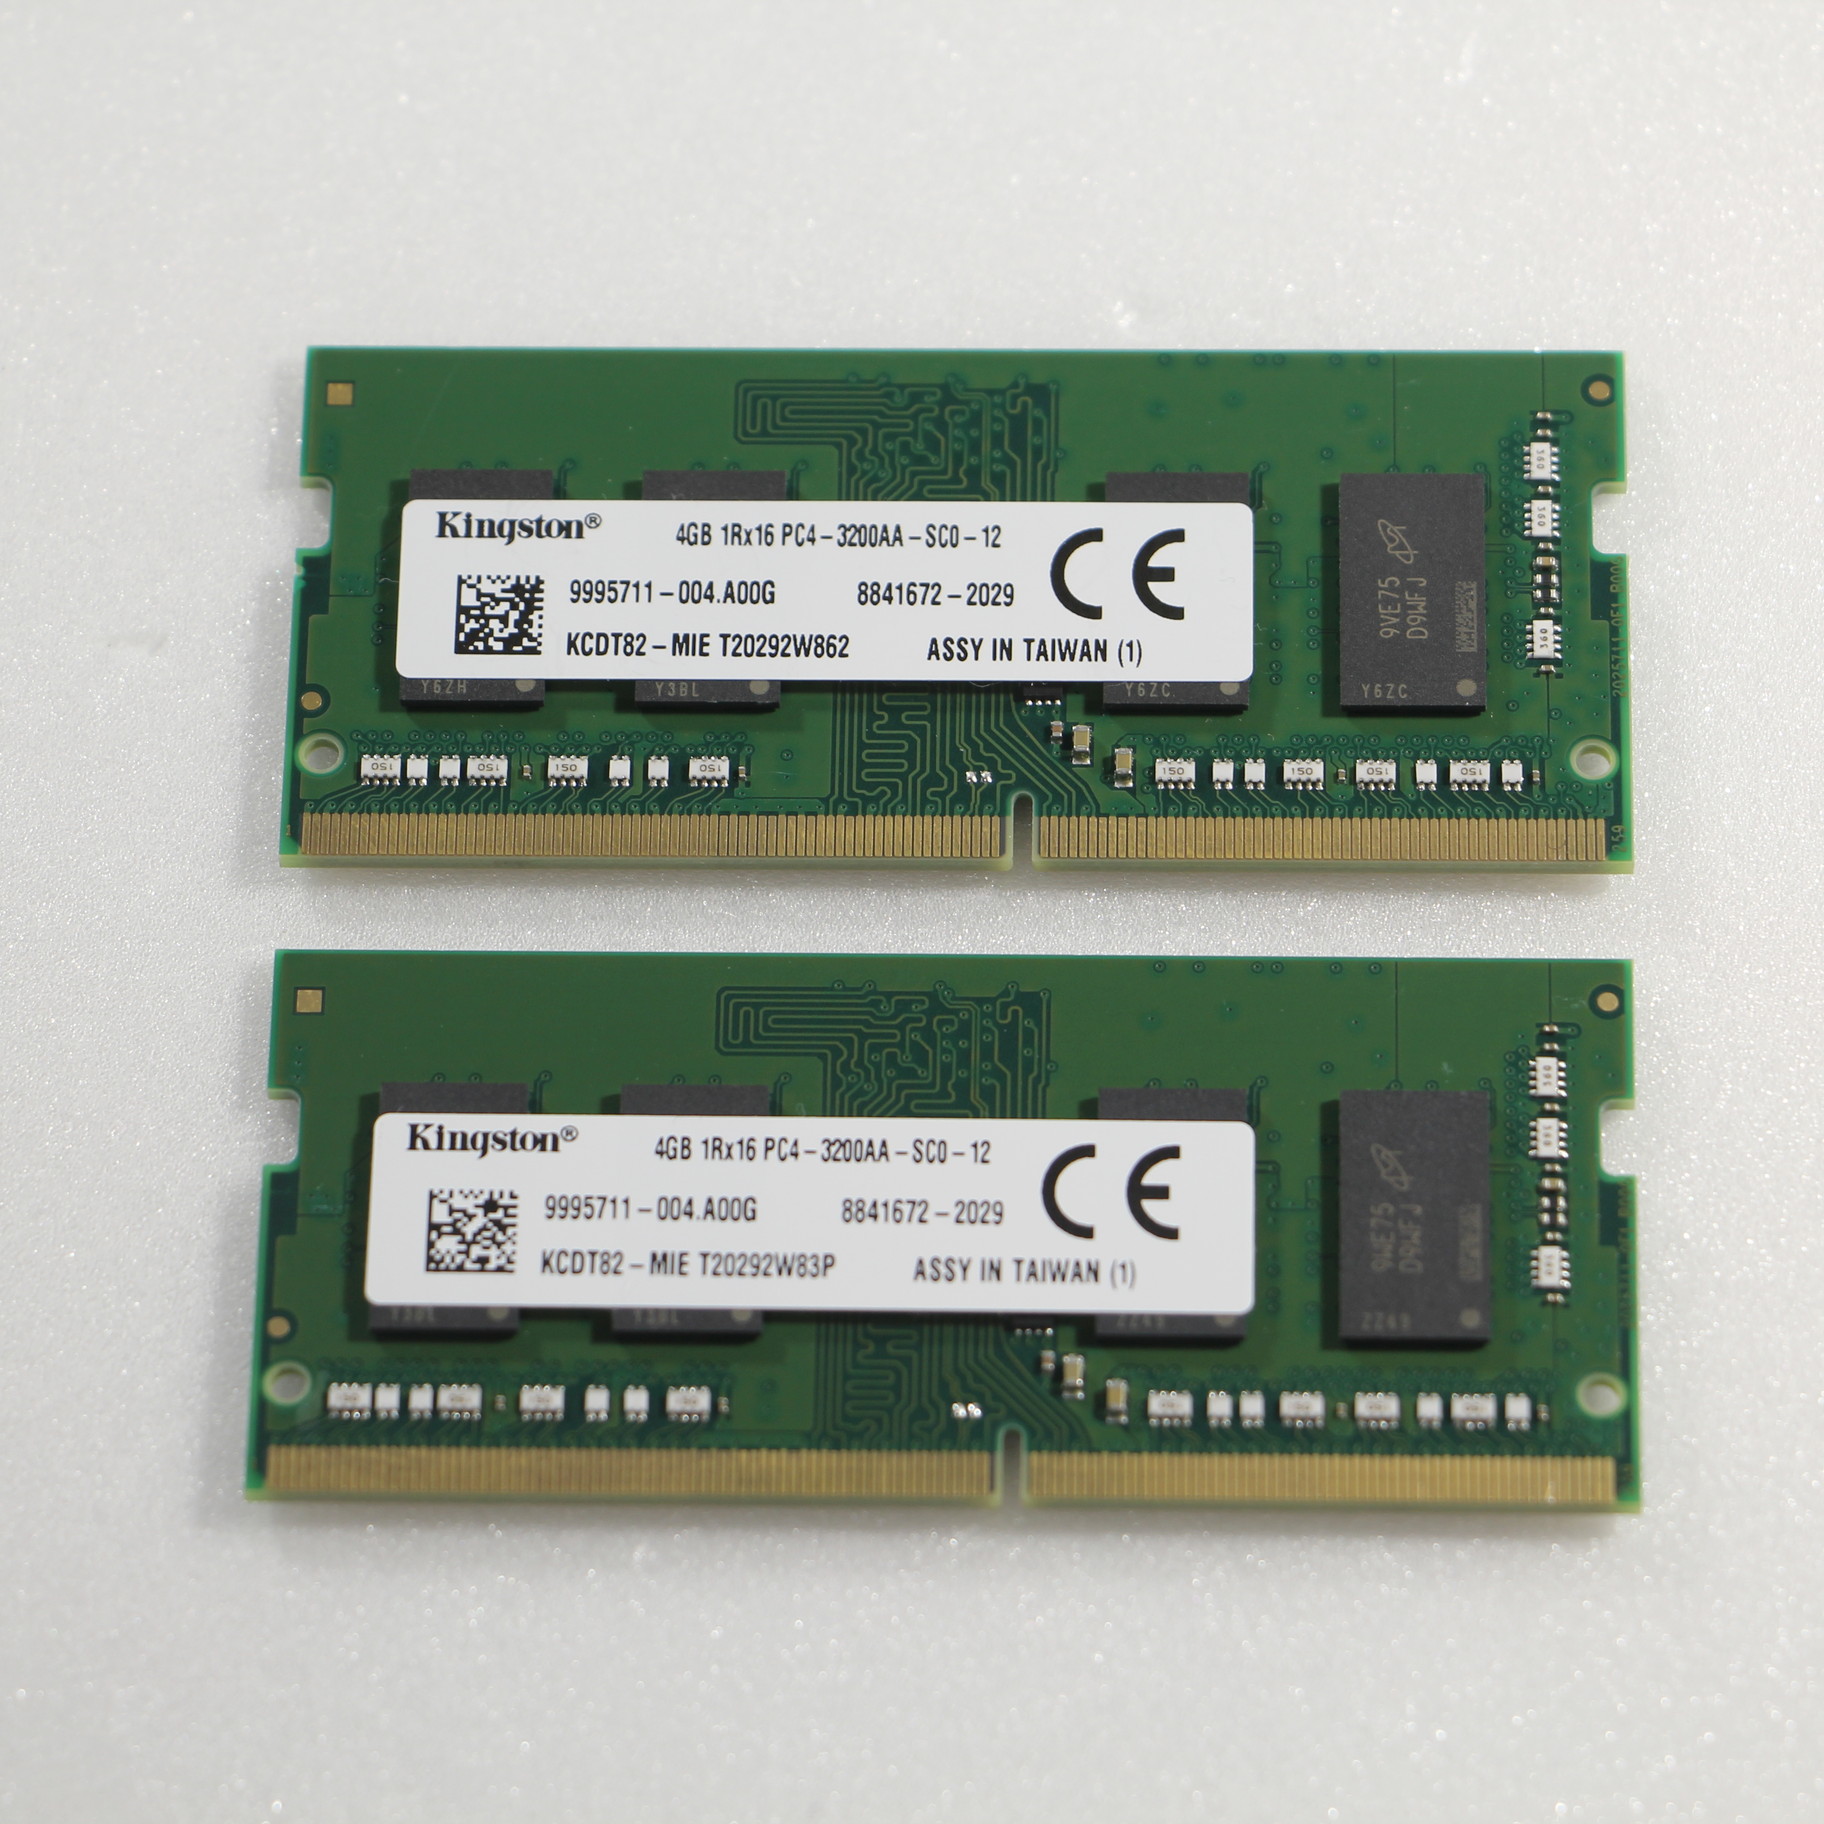 Kingston 8GB DDR4 3200 SODIMM  ２枚組